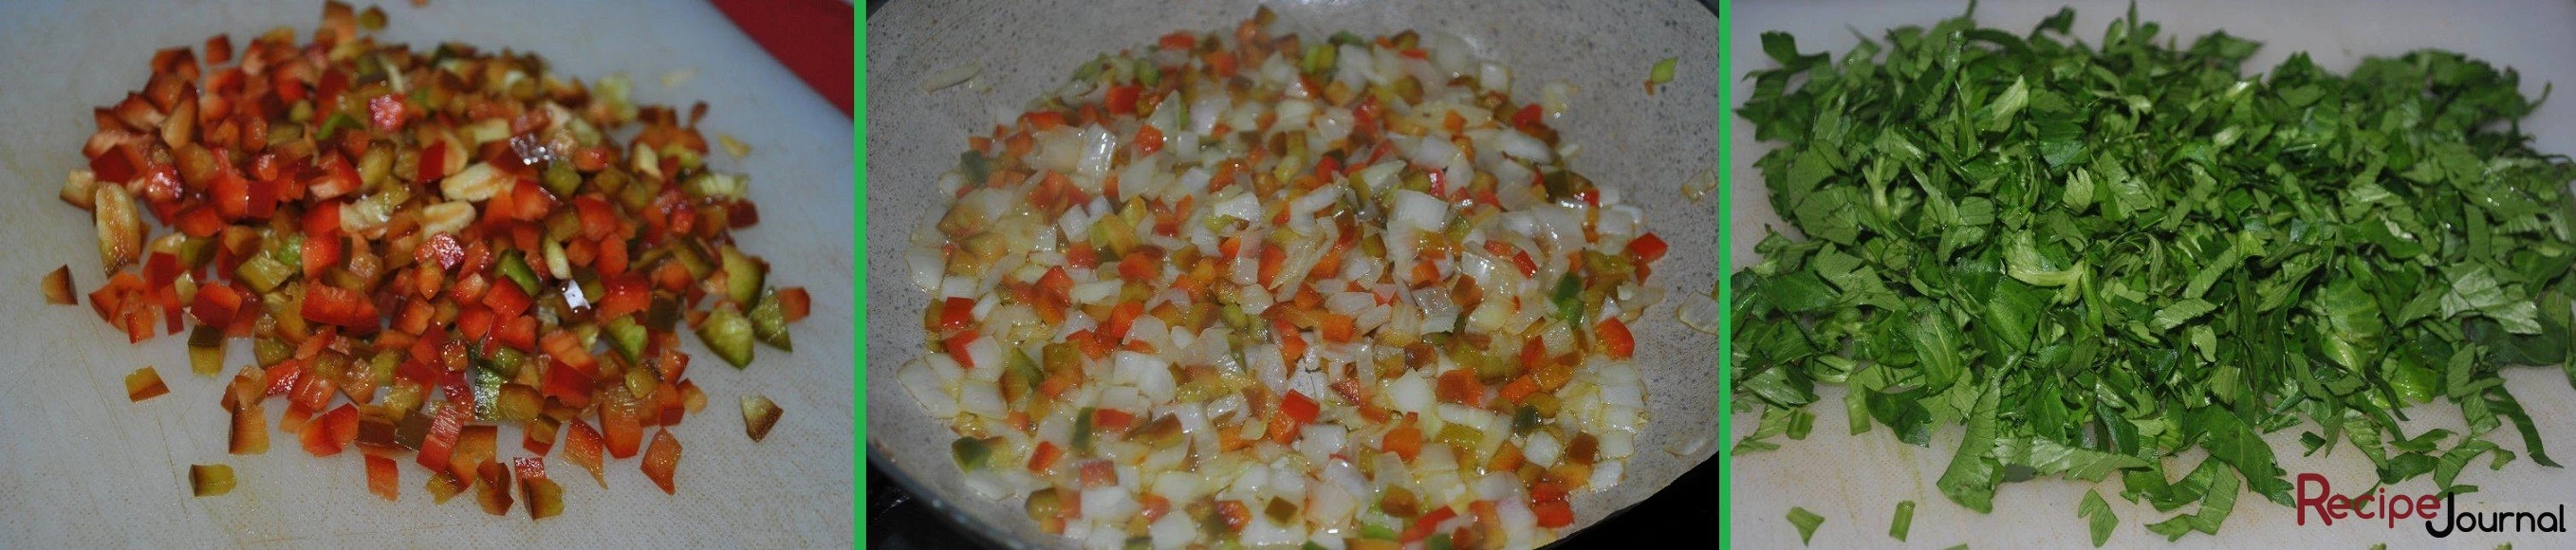 Болгарский перец порезать мелким кубиком. Разогреть в сковороде растительное масло и обжарить лук, затем добавить к нему перец и потушить до мягкости. Мелко порезать зелень.